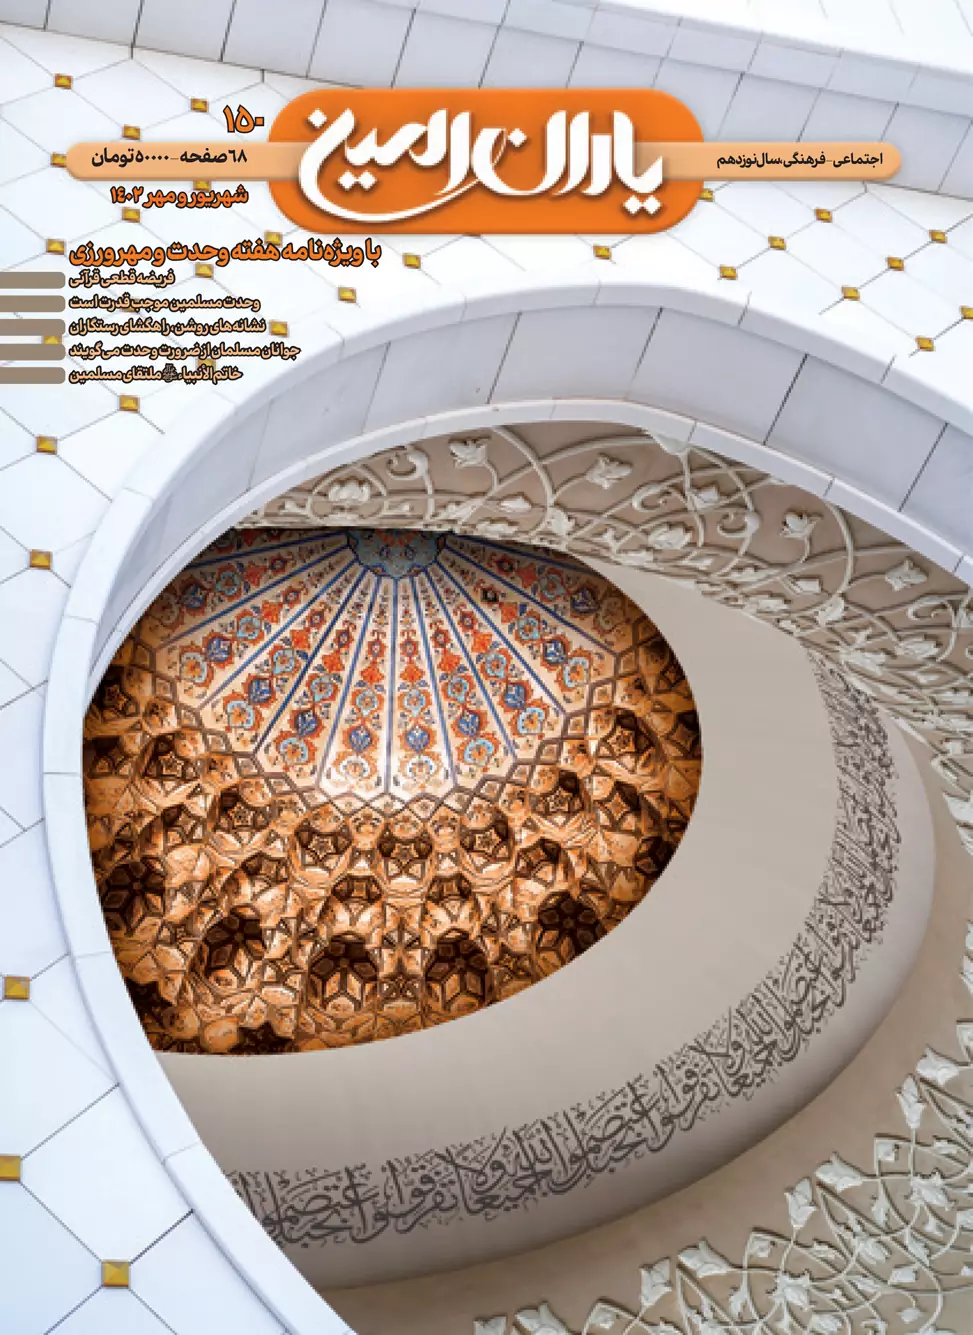 مجله شماره 150یاران امین بزودی منتشر می شود - امین یاوران